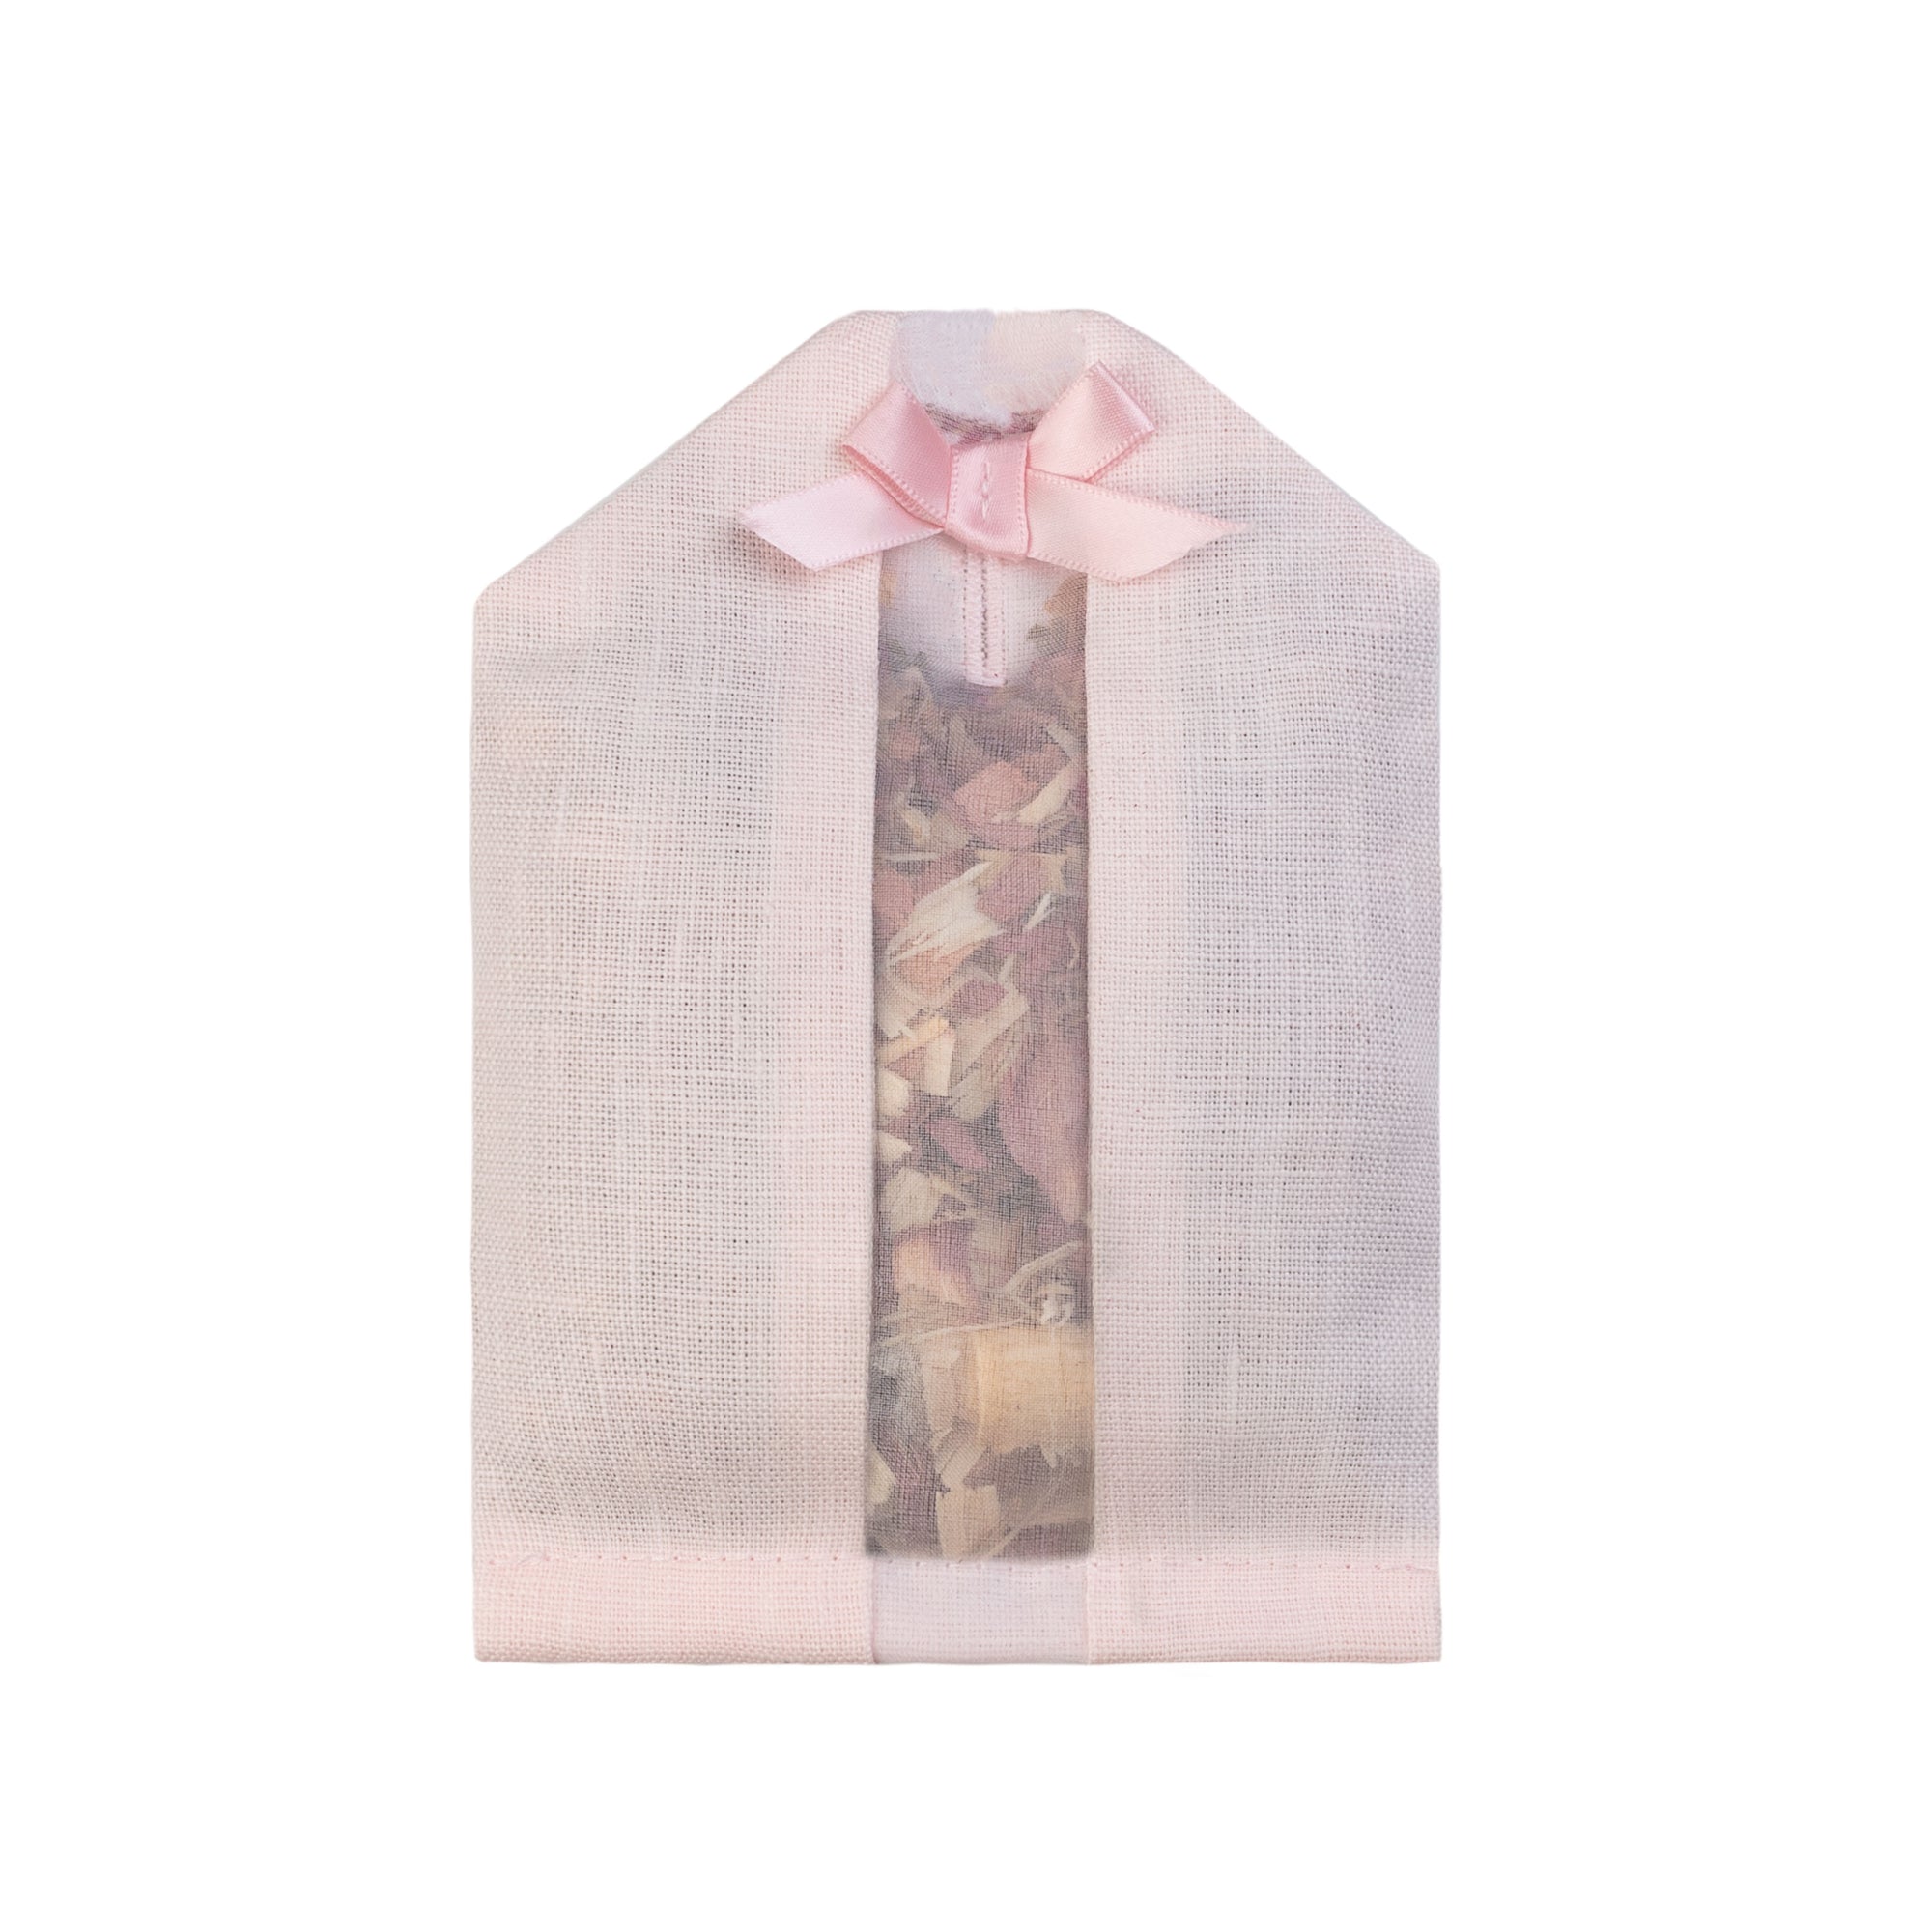 Cedar filled inside of a pink colored linen hanger sachet 